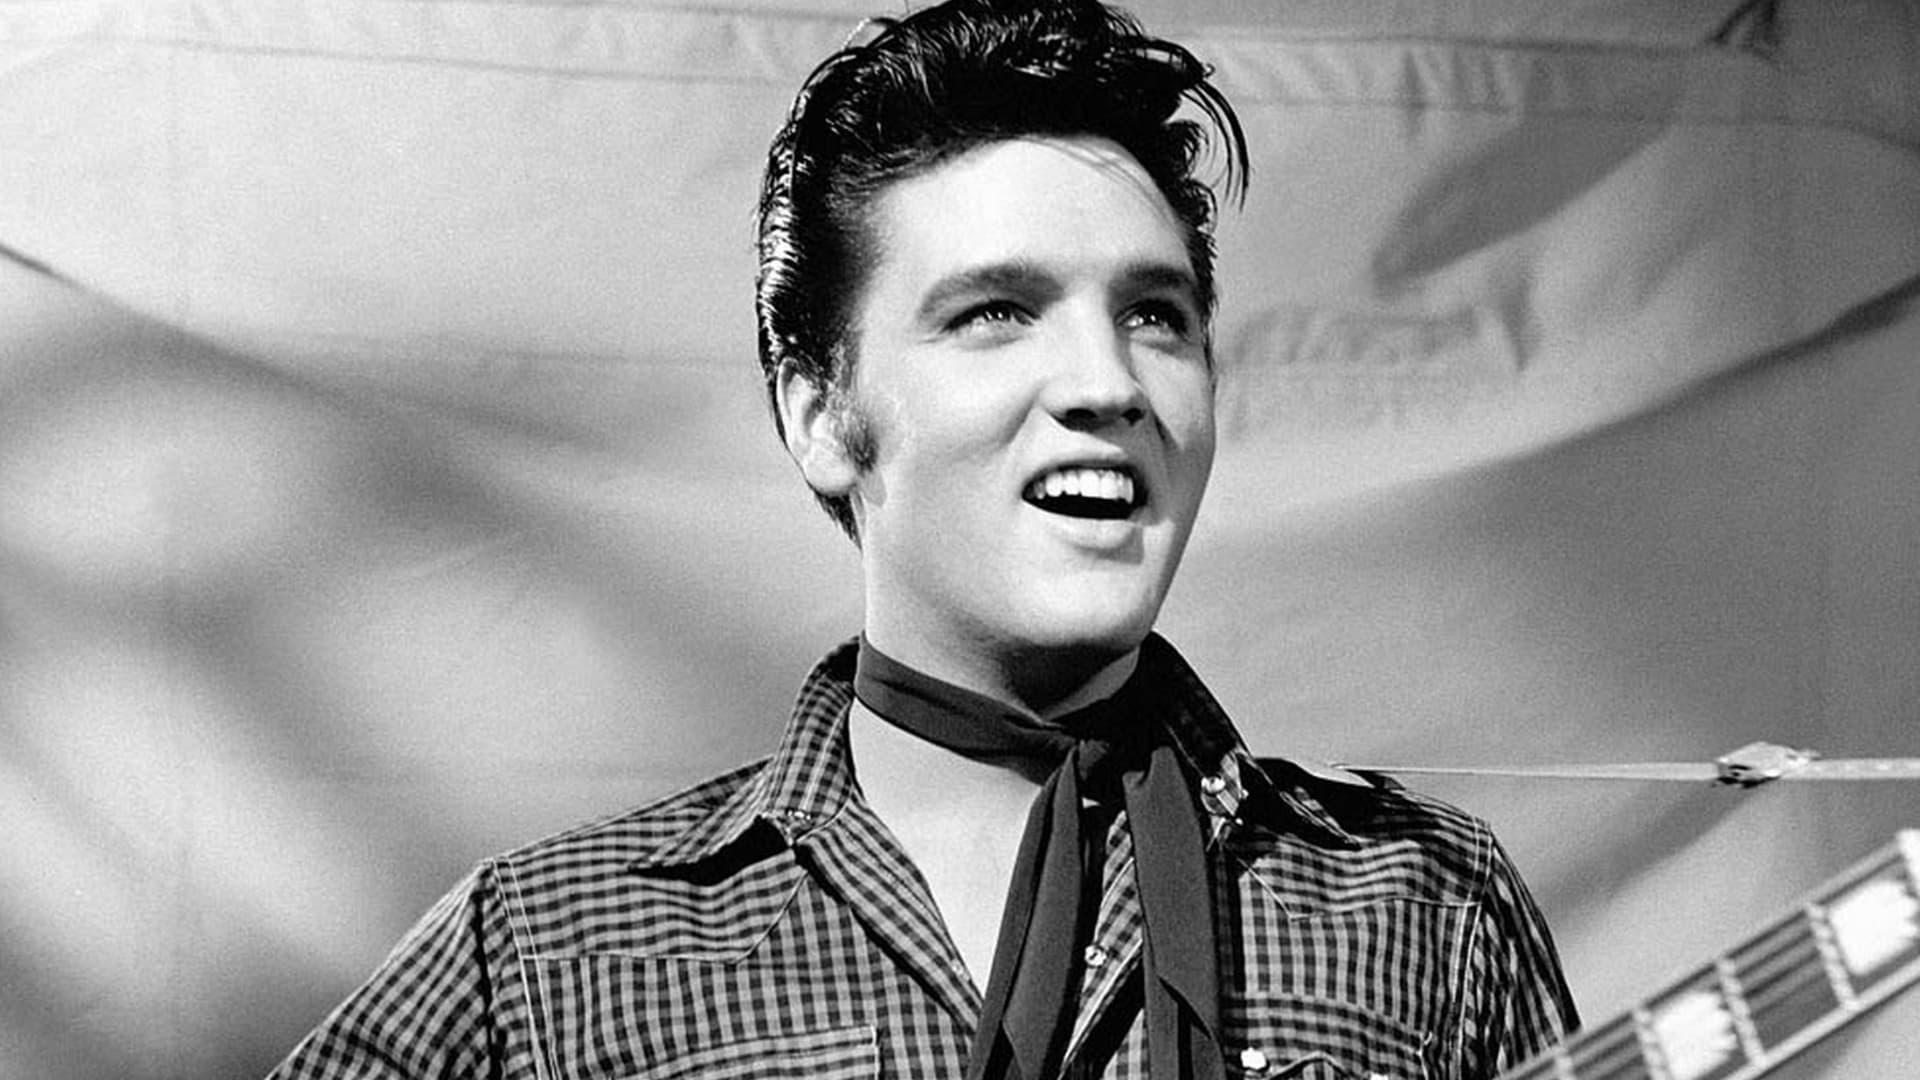 Elvis '56 backdrop